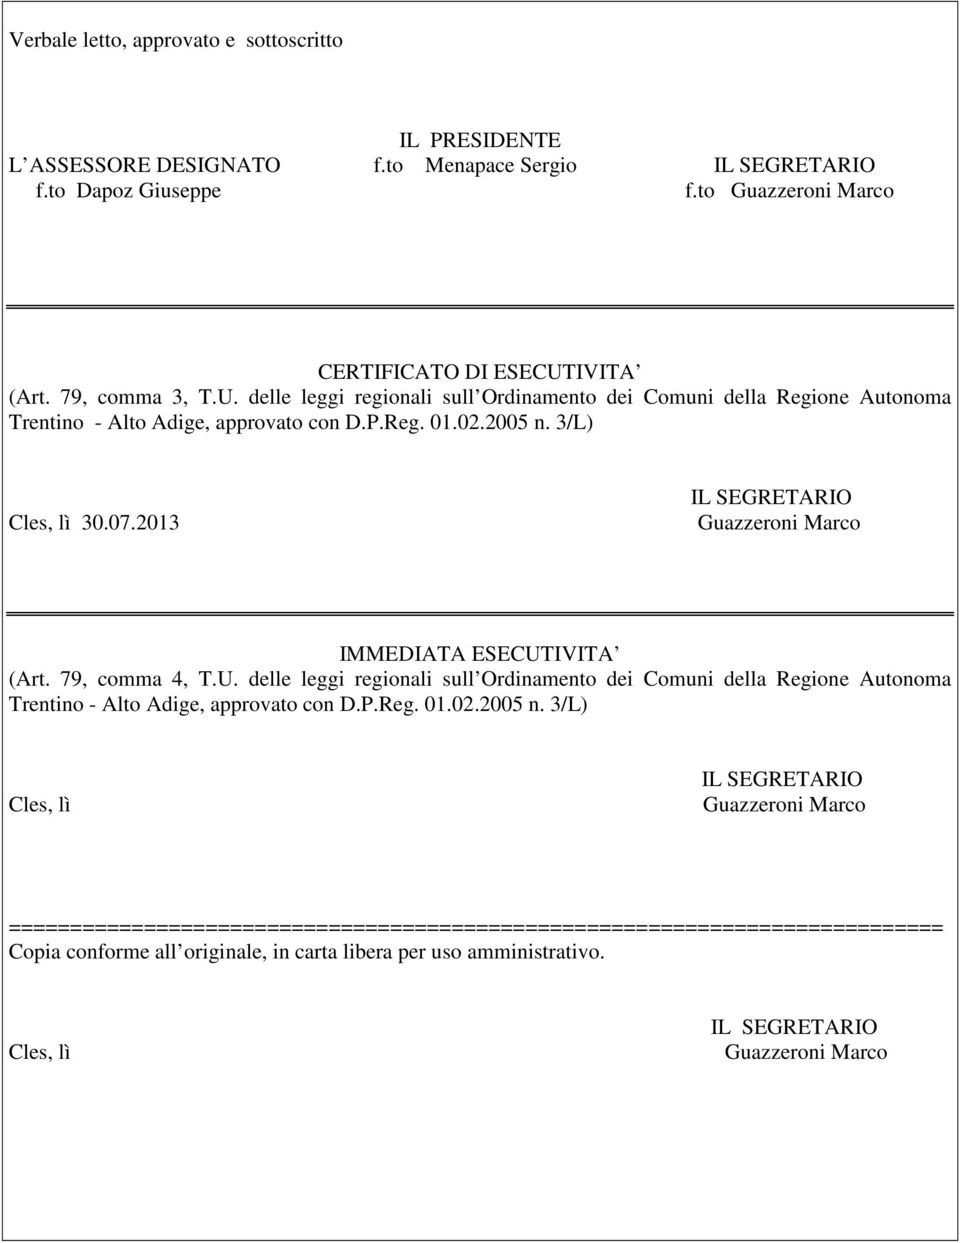 2013 IMMEDIATA ESECUTIVITA (Art. 79, comma 4, T.U. delle leggi regionali sull Ordinamento dei Comuni della Regione Autonoma Trentino - Alto Adige, approvato con D.P.Reg. 01.